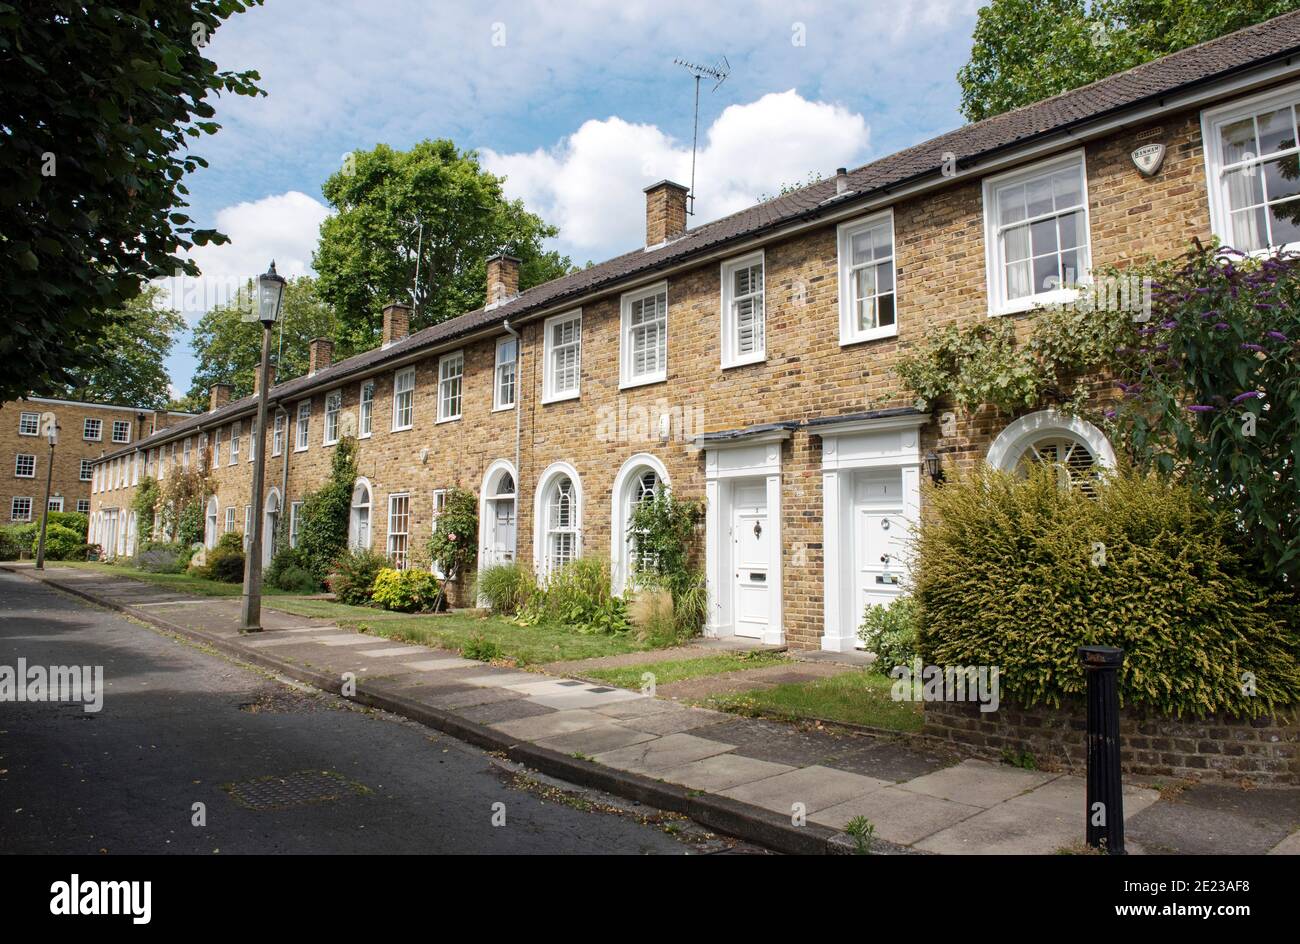 Fila de casas adosadas neo georgianas de dos pisos que muestran atractivos jardines frontales, Hopping Lane, Canonbury, Borough de Islington en Londres Foto de stock